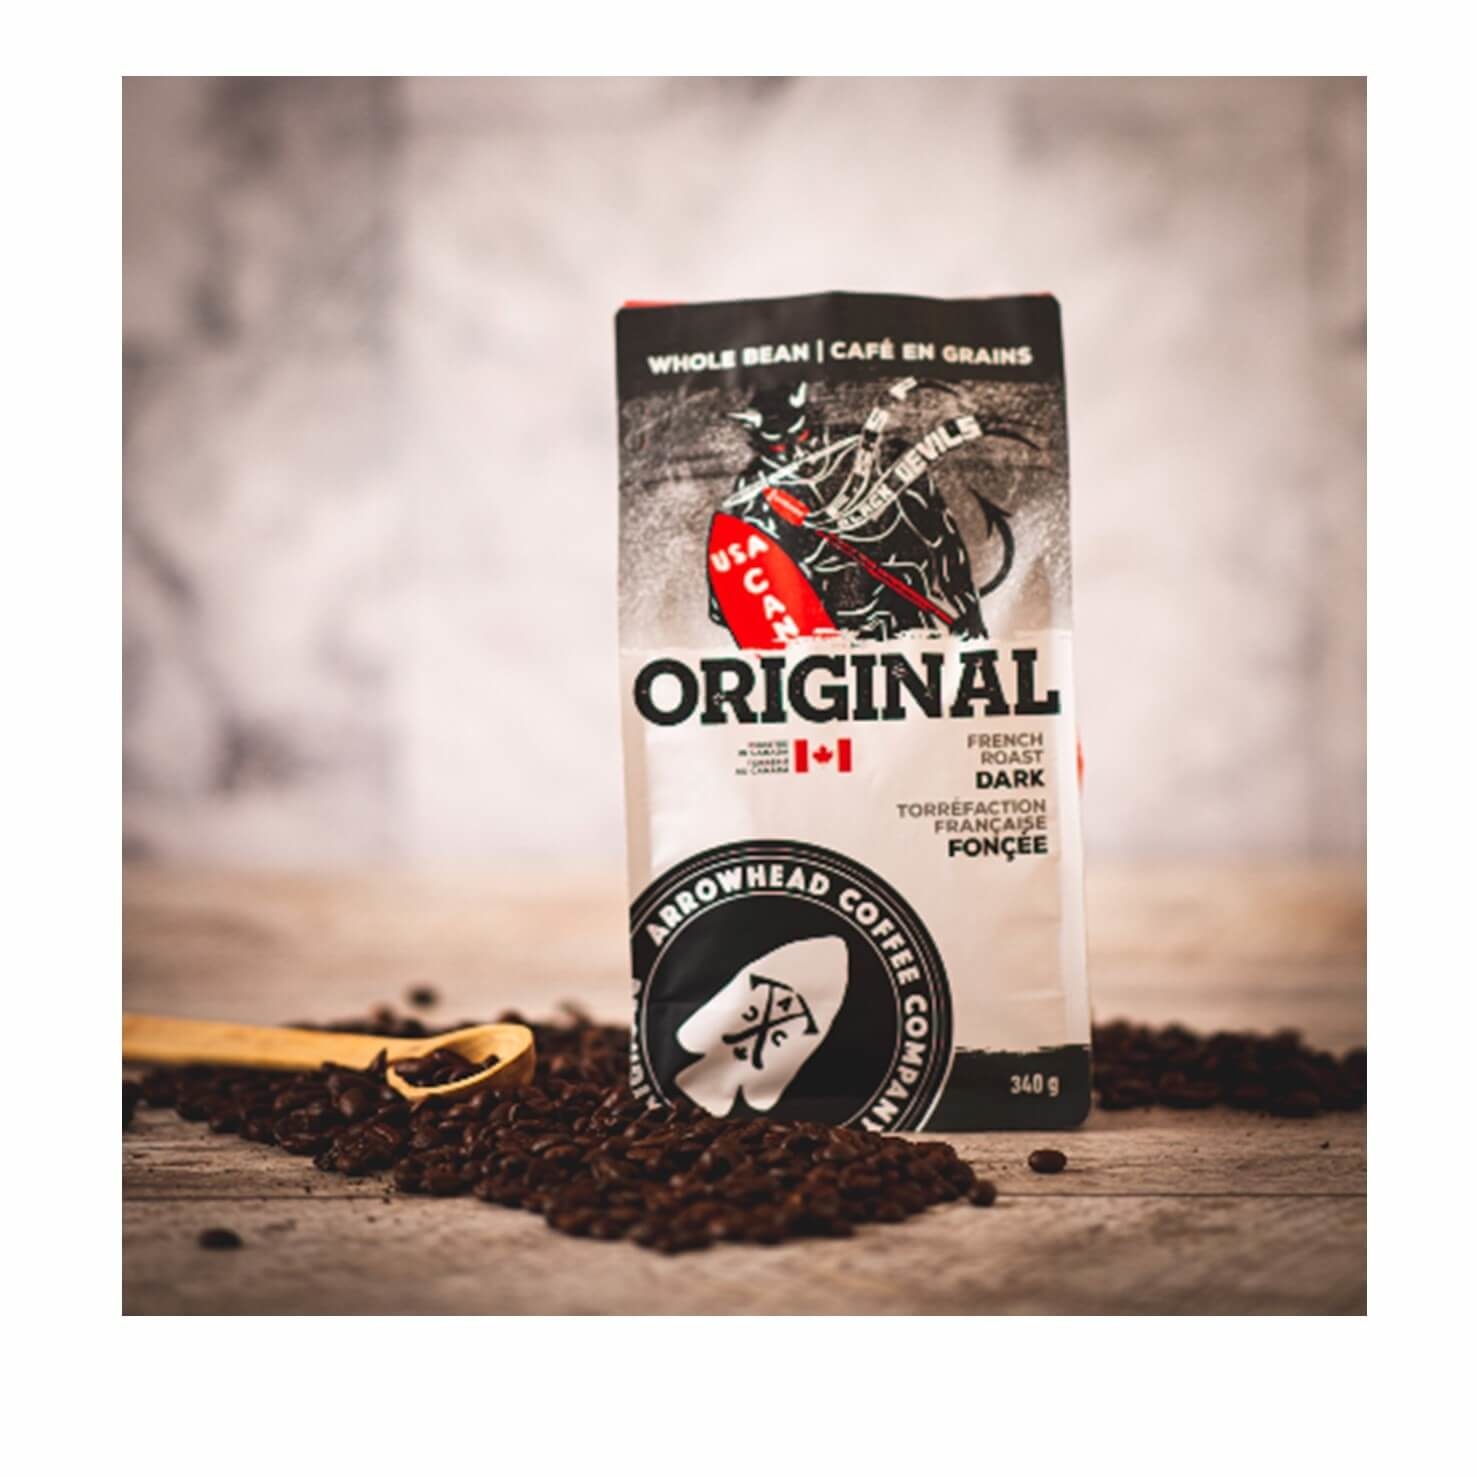 Arrowhead French Roast Dark Coffee - Original - 340g